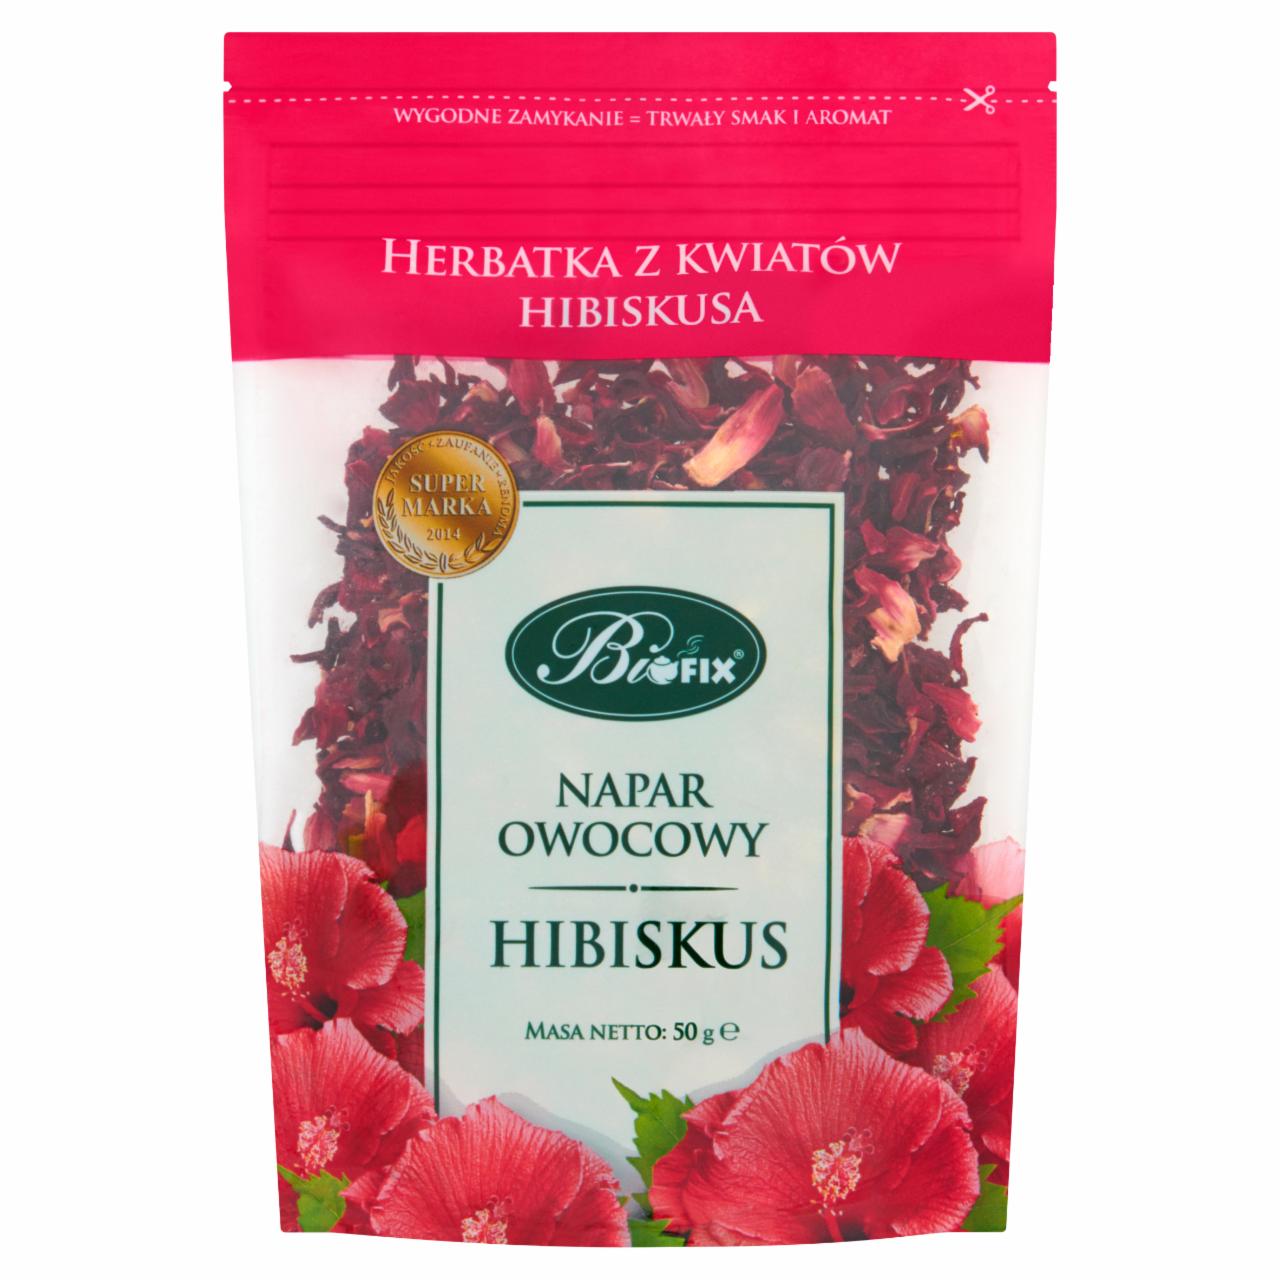 Zdjęcia - Bifix Napar owocowy hibiscus Herbatka z kwiatów hibiskusa 50 g